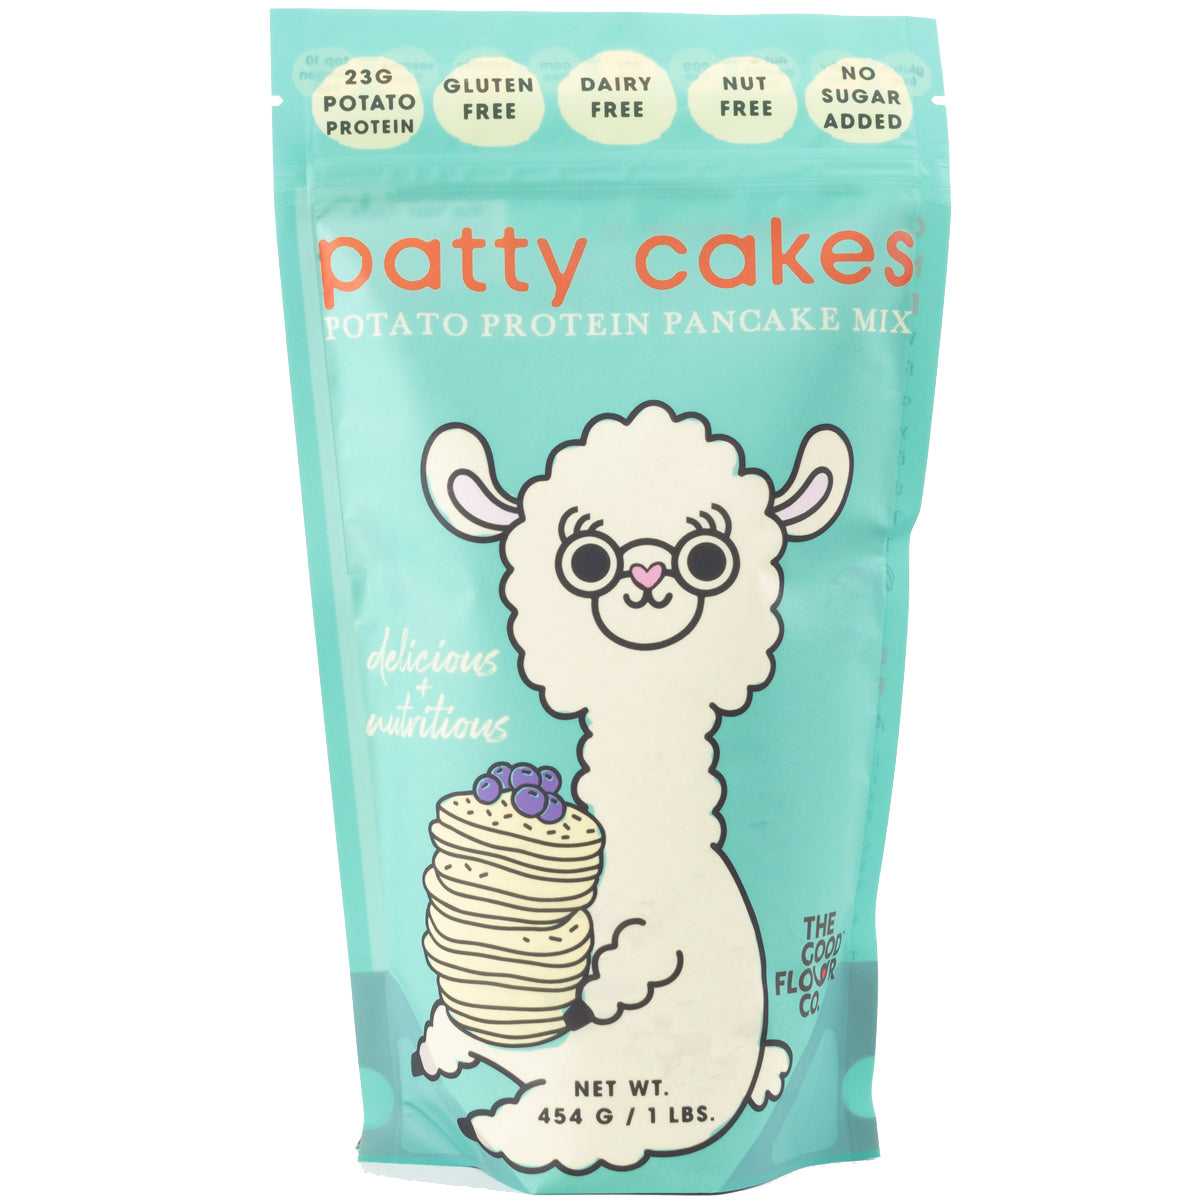 Patty Cakes Potato Protein Pancake Mix